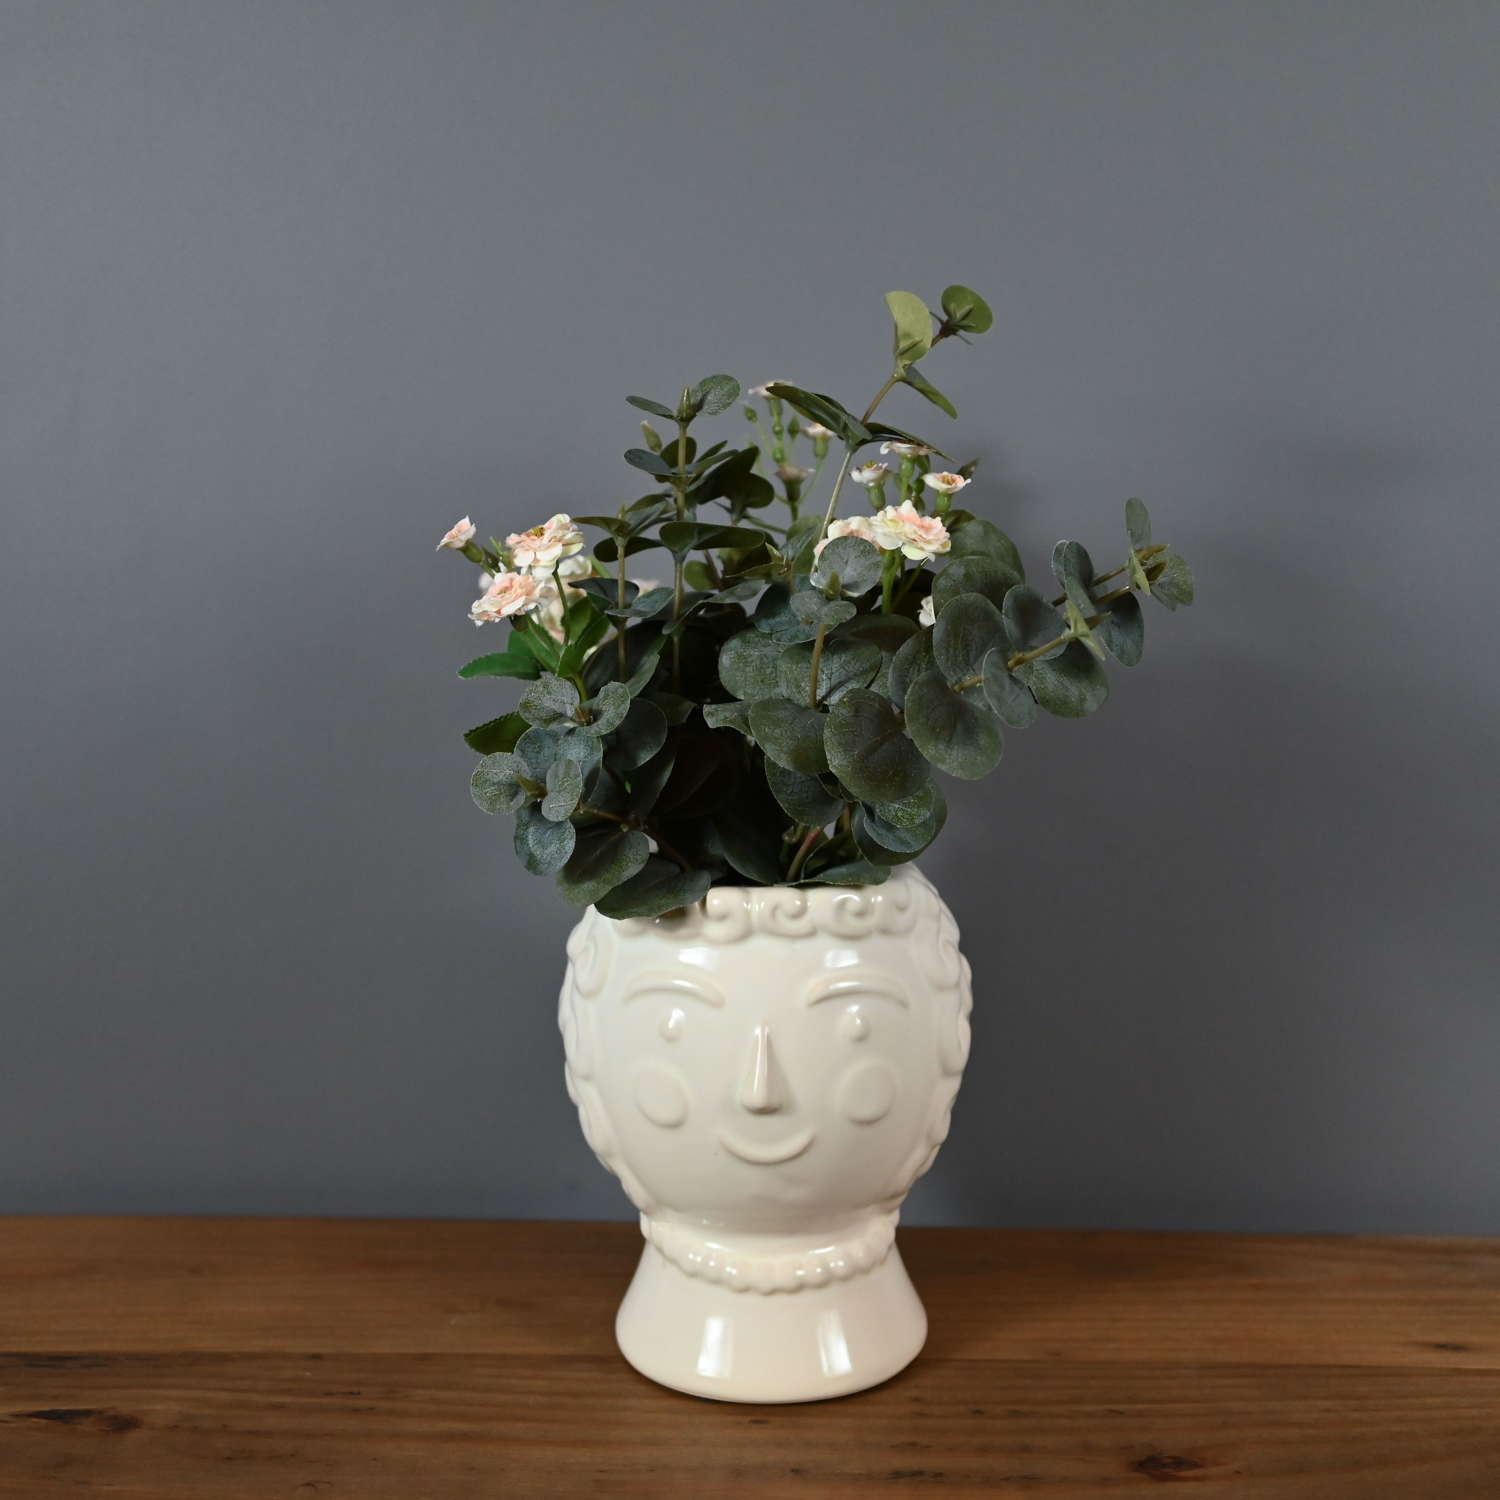 Lady Julius cream ceramic face vase planter